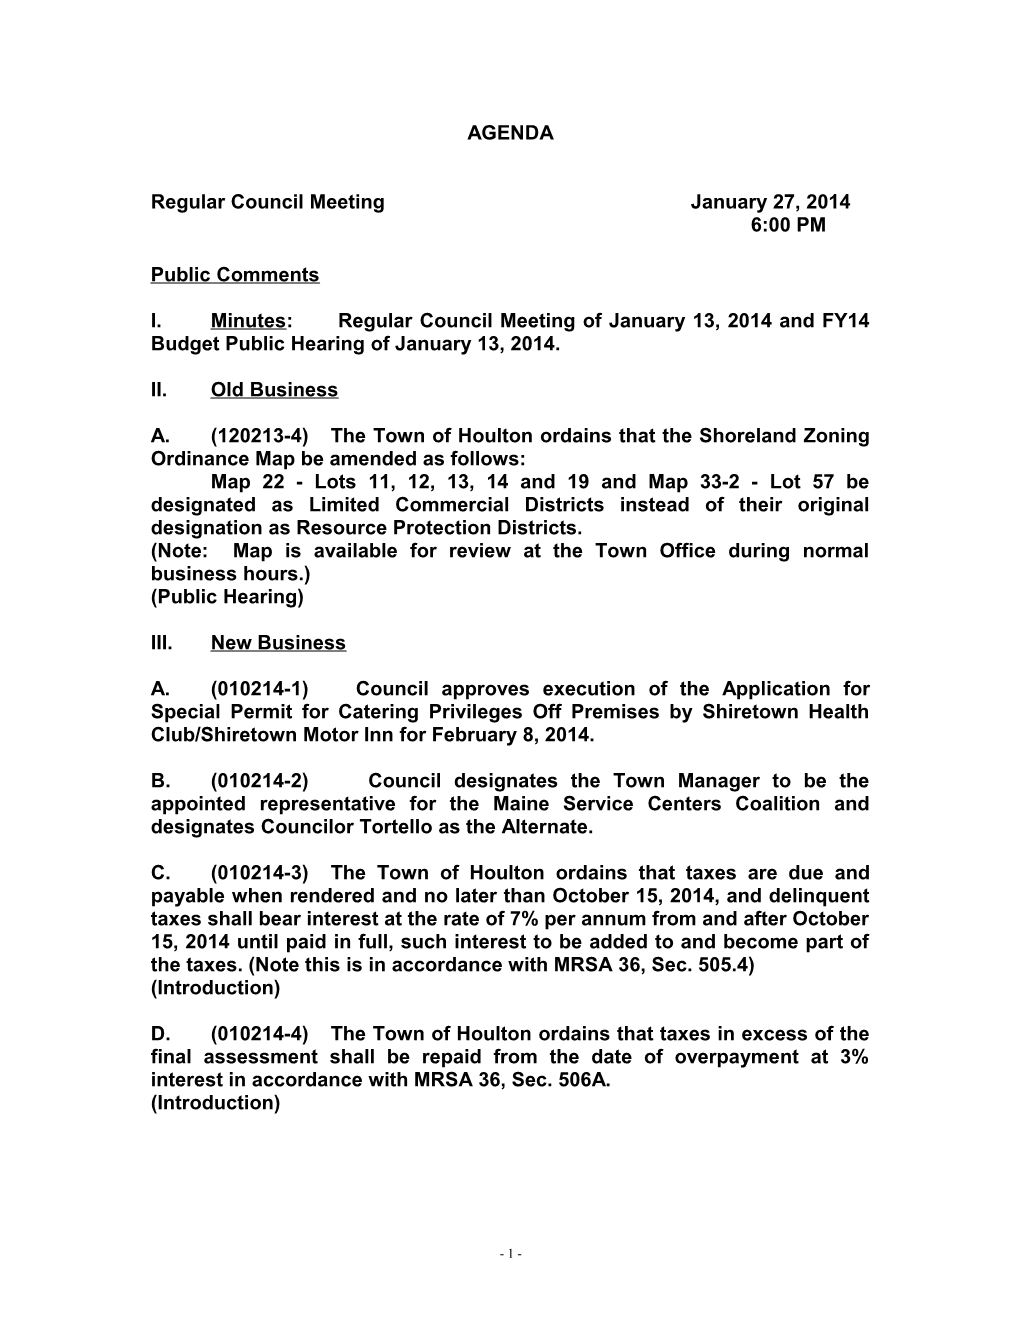 Regular Council Meeting January 27, 2014